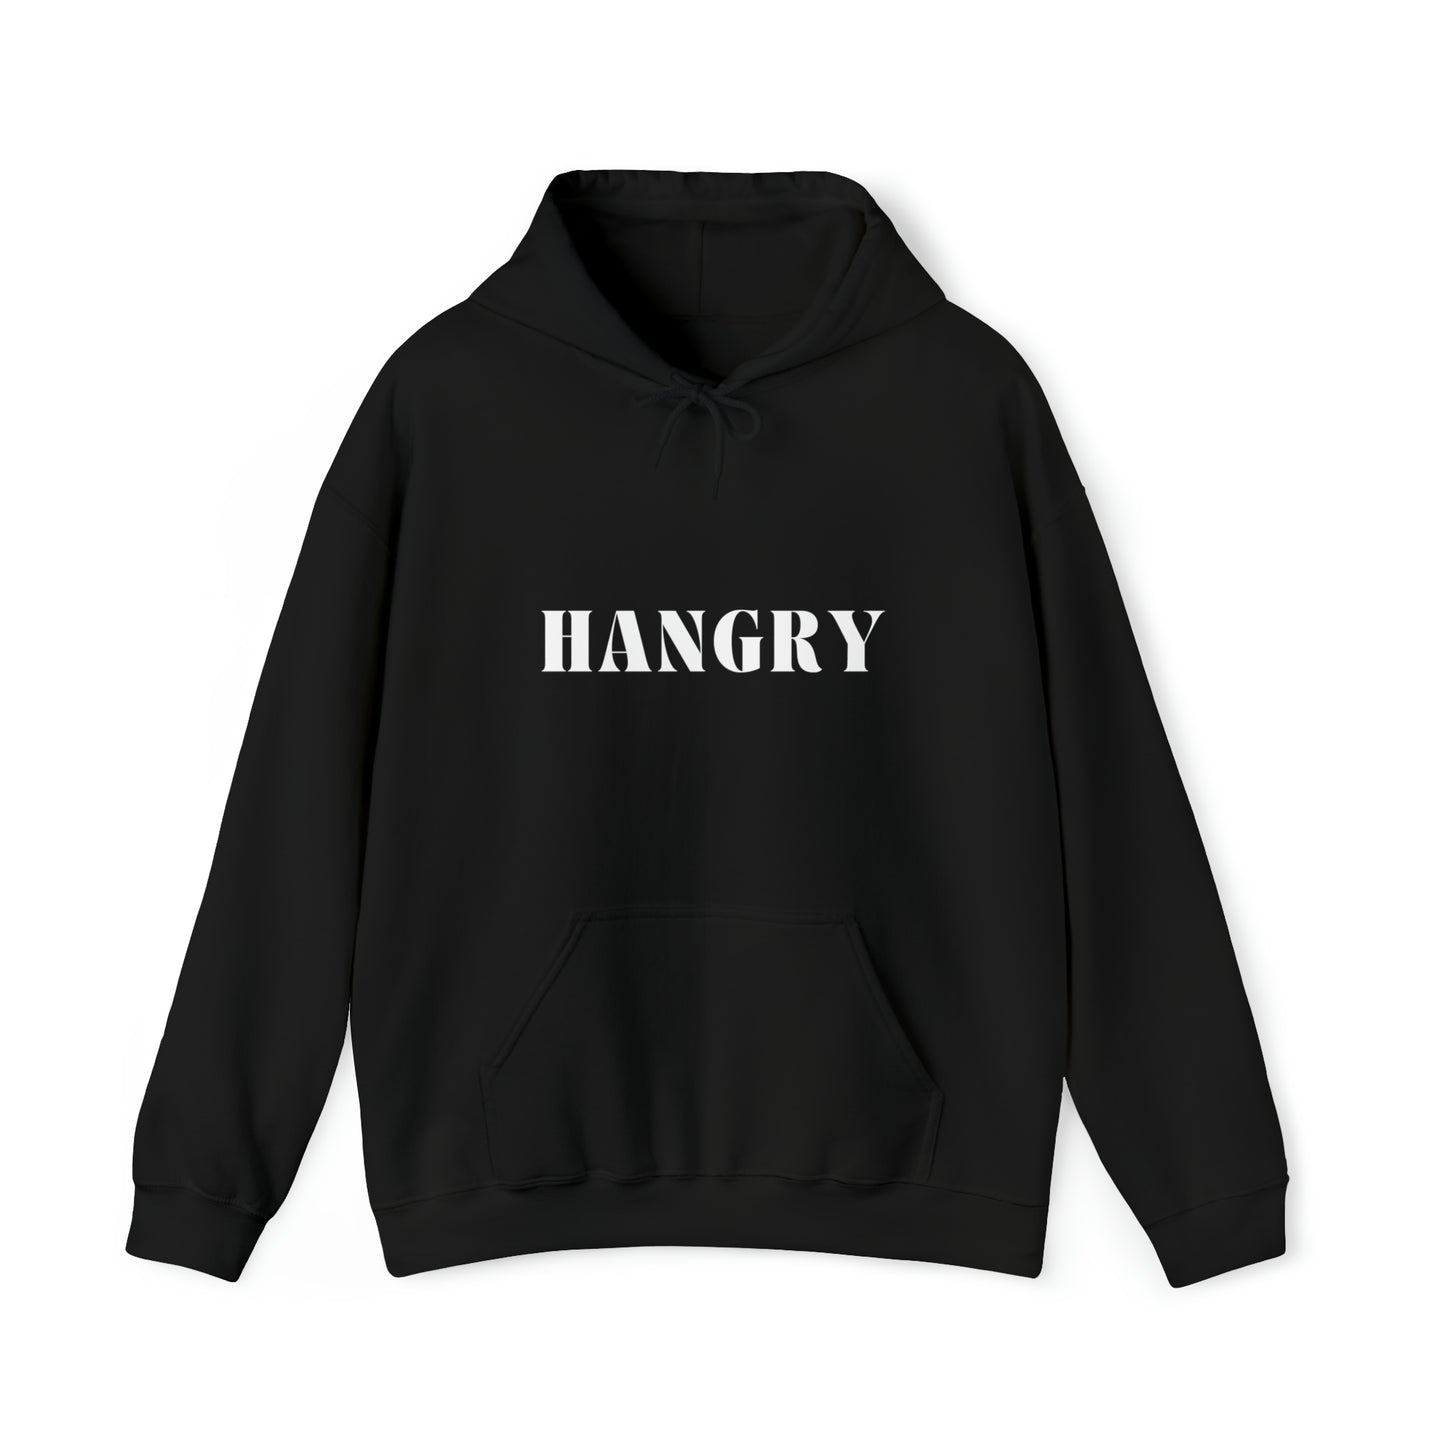 S Black Hangry Hoodie from HoodySZN.com